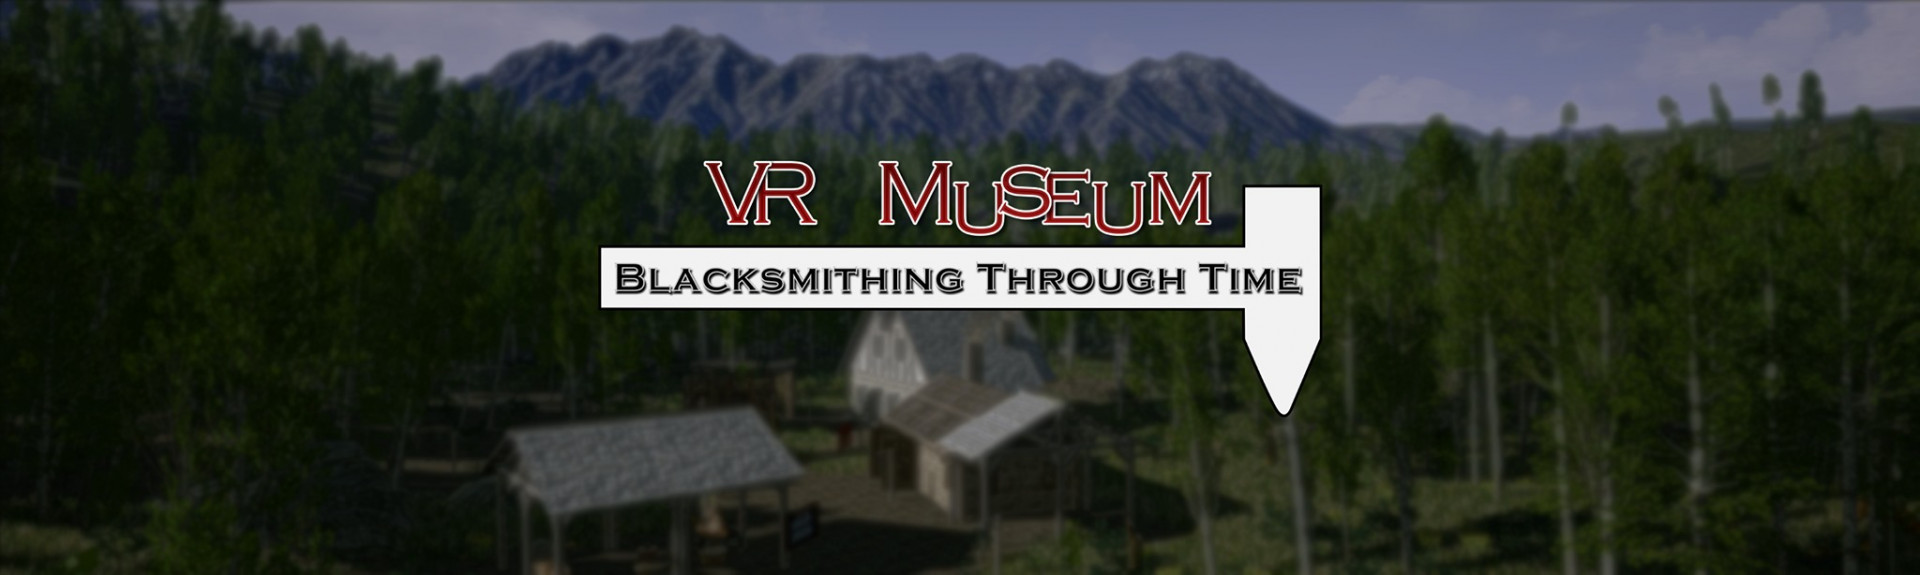 VR Museum: Blacksmithing Through Time